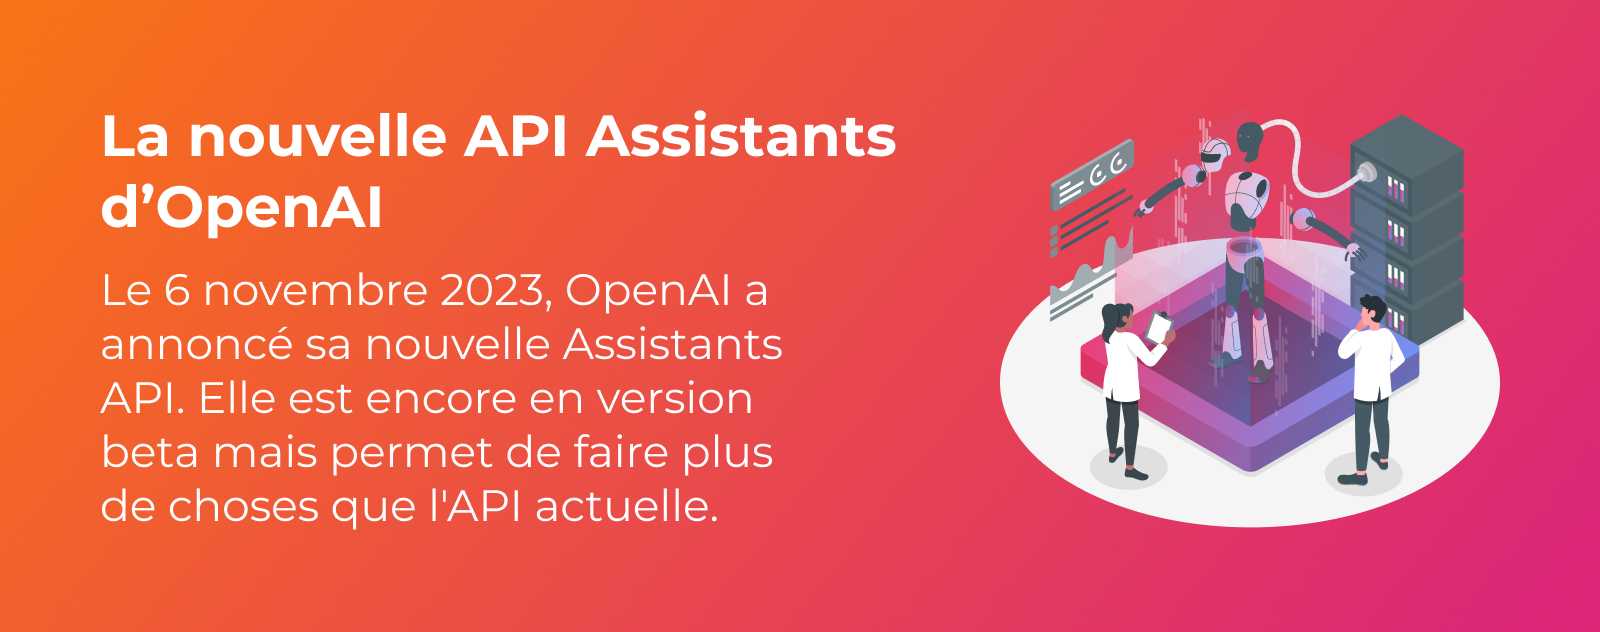 L'API Assistants d'OpenAI